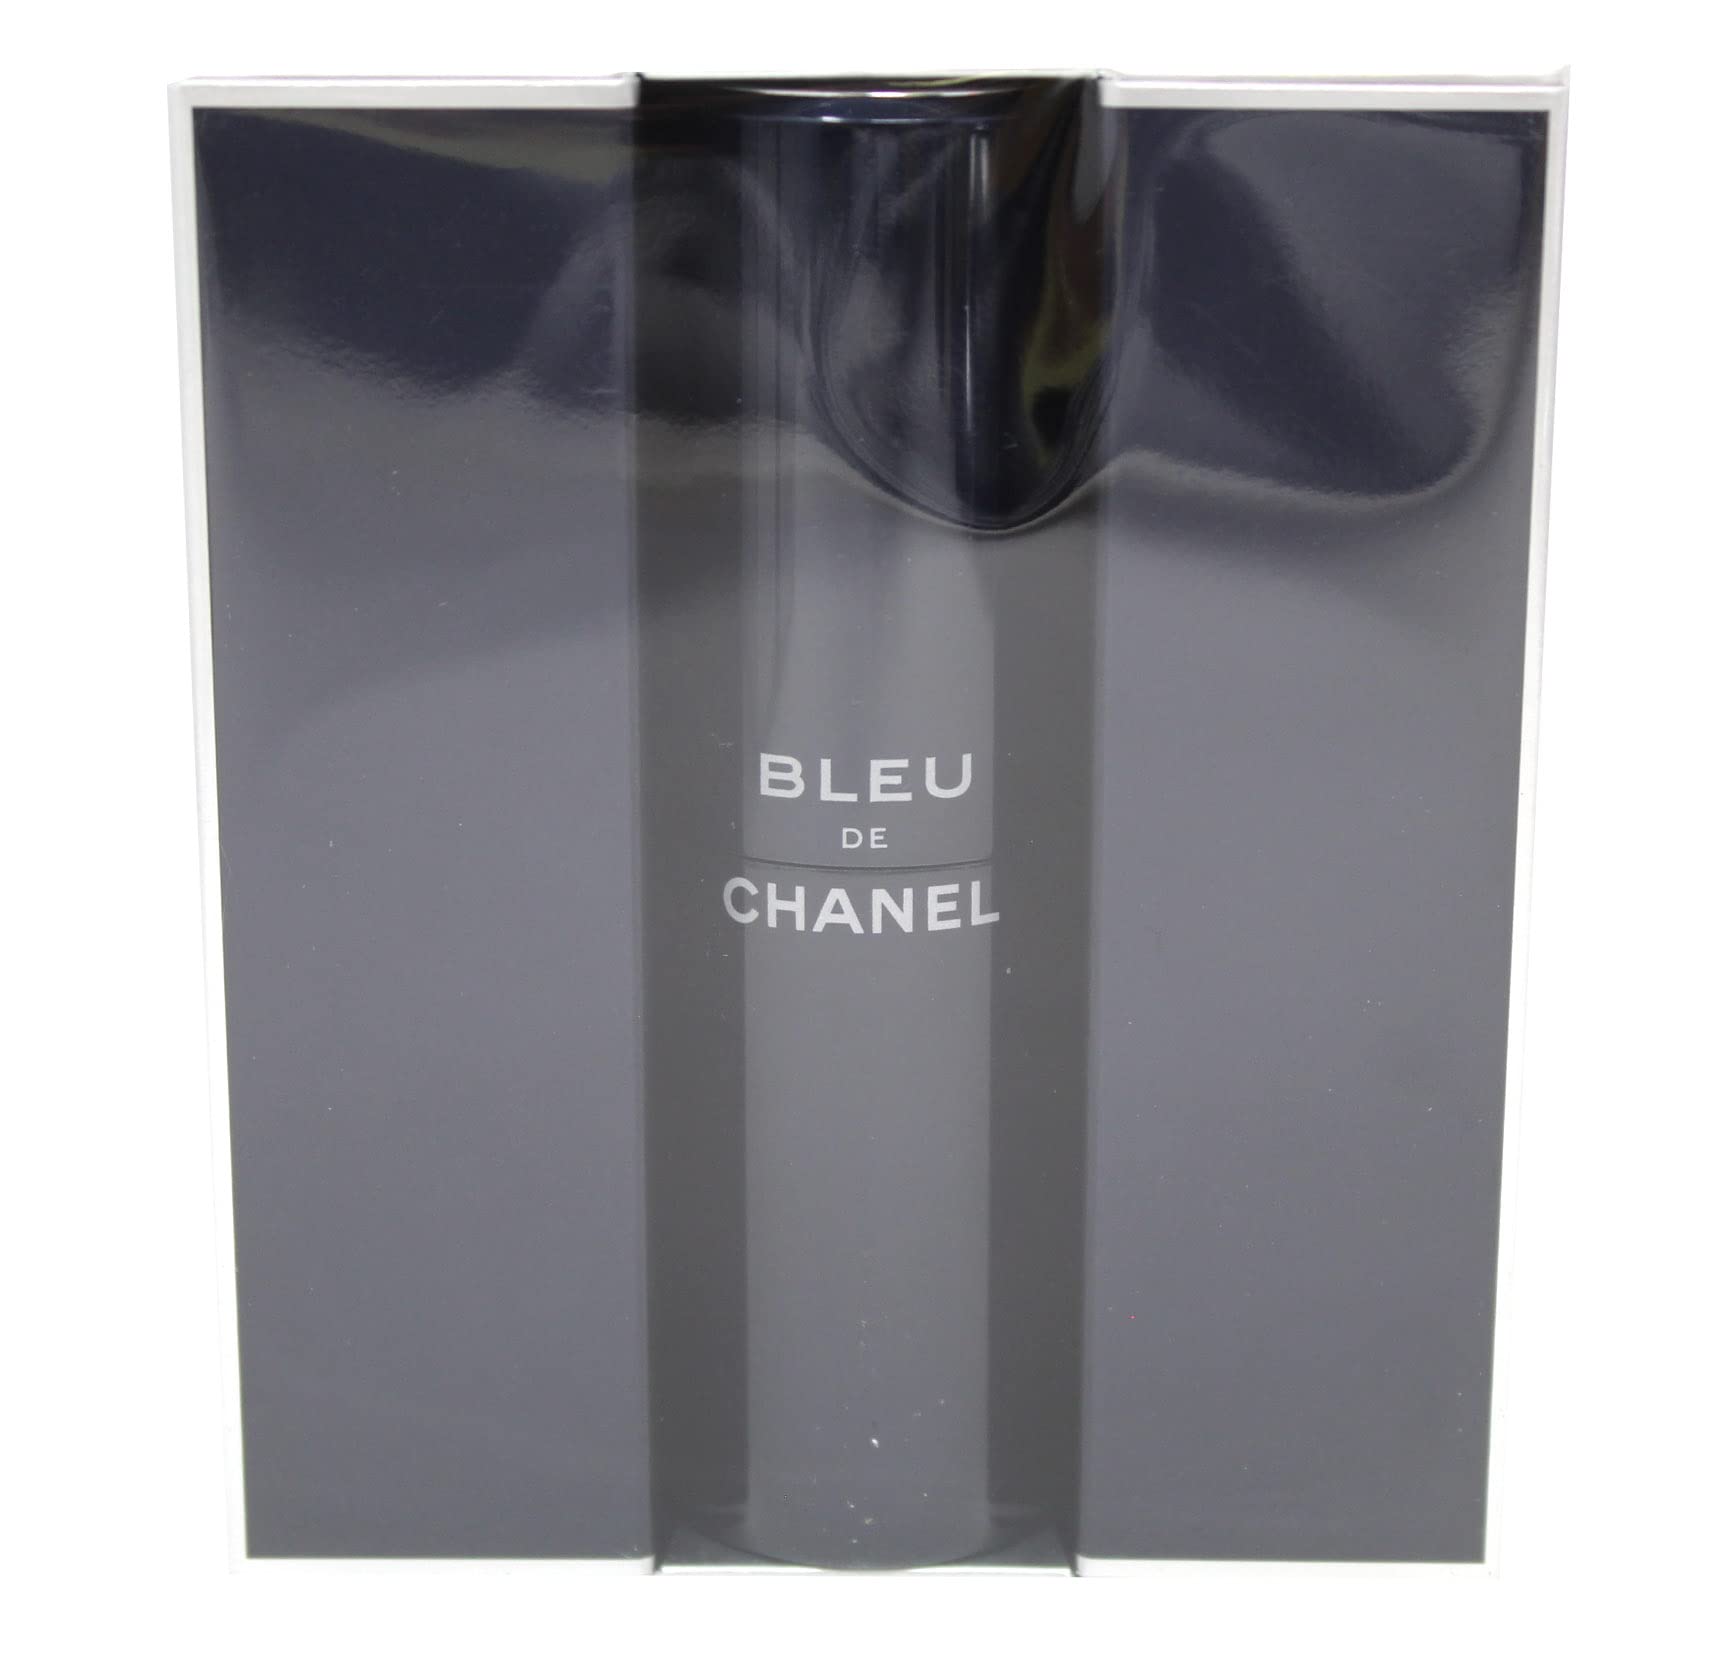 Nước hoa Bleu de Chanel travel size mẫu dùng thử bỏ túi  Ngu Ngơ Perfume